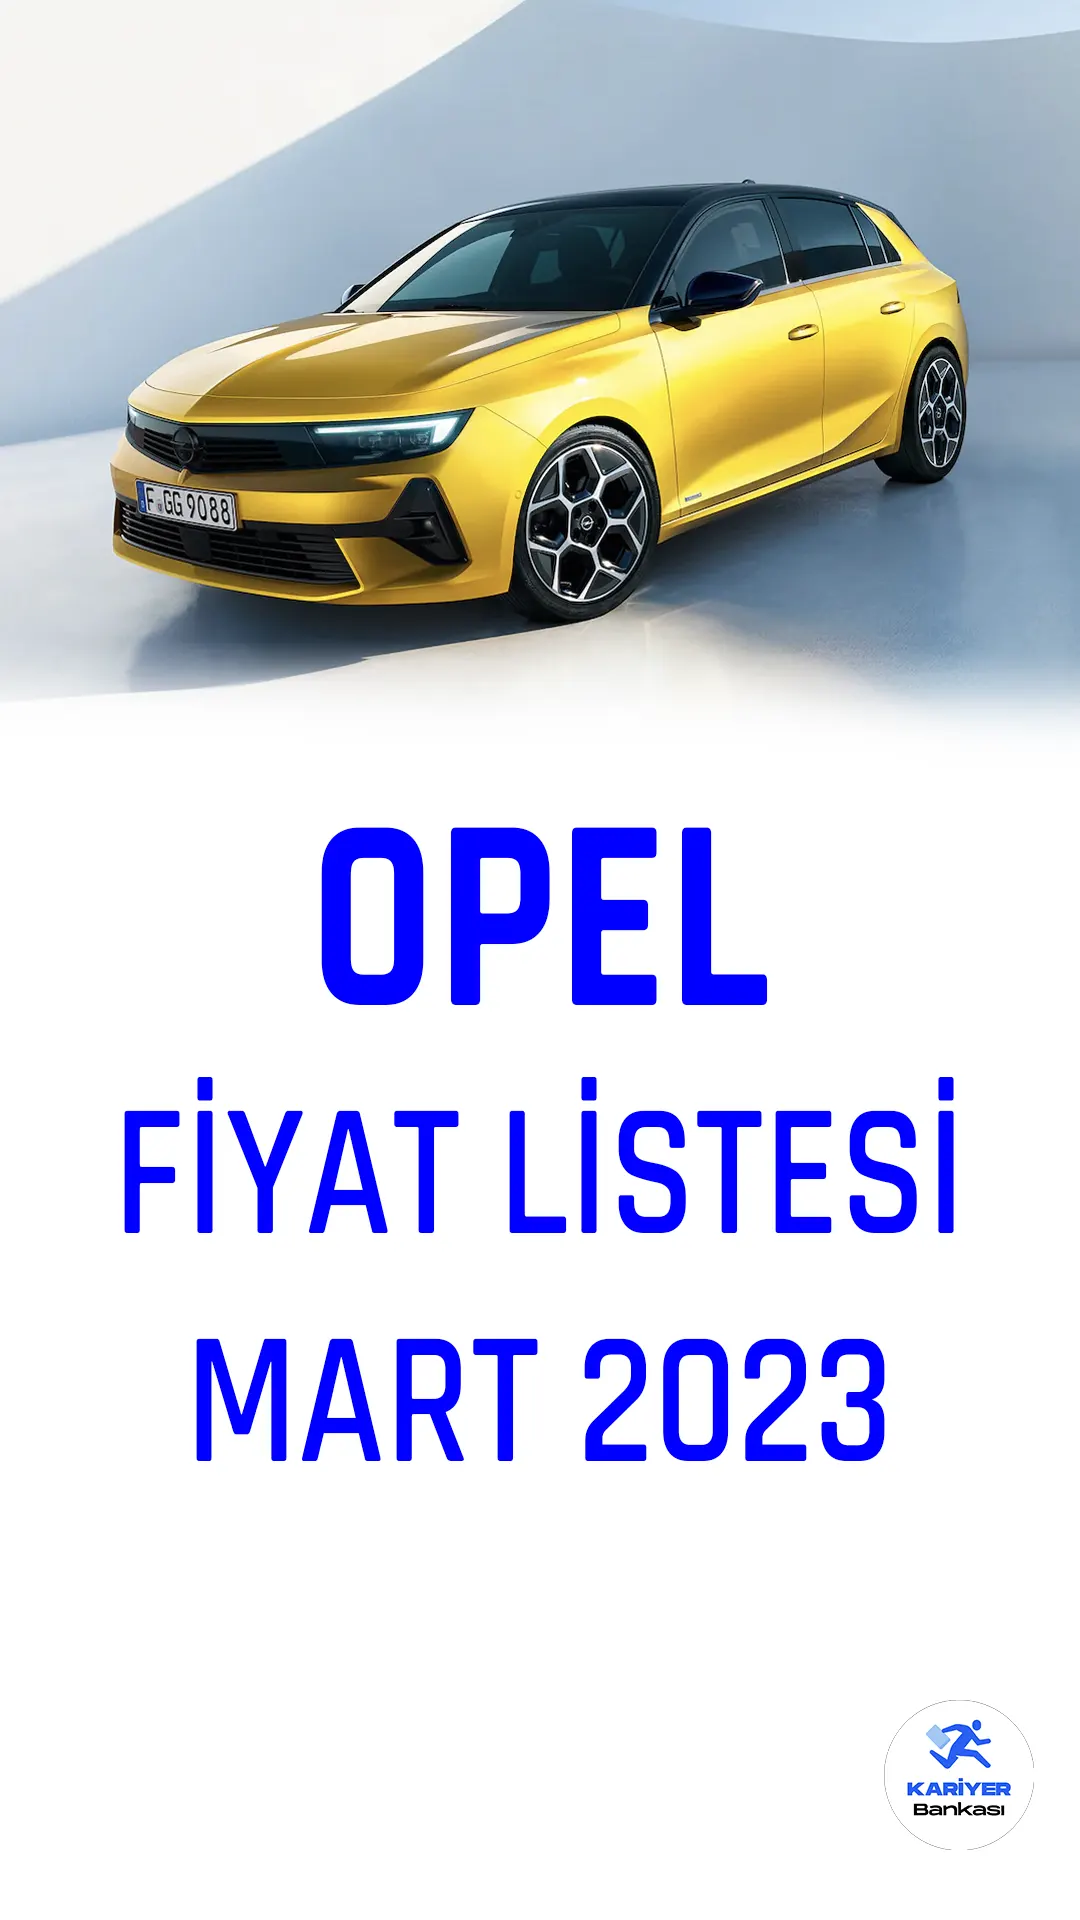 Opel Mart fiyat listesi yayımlandı. Türkiye'de popüler araç markalarından biri olan Opel, her ay fiyat listelerini güncellemeye devam ediyor.